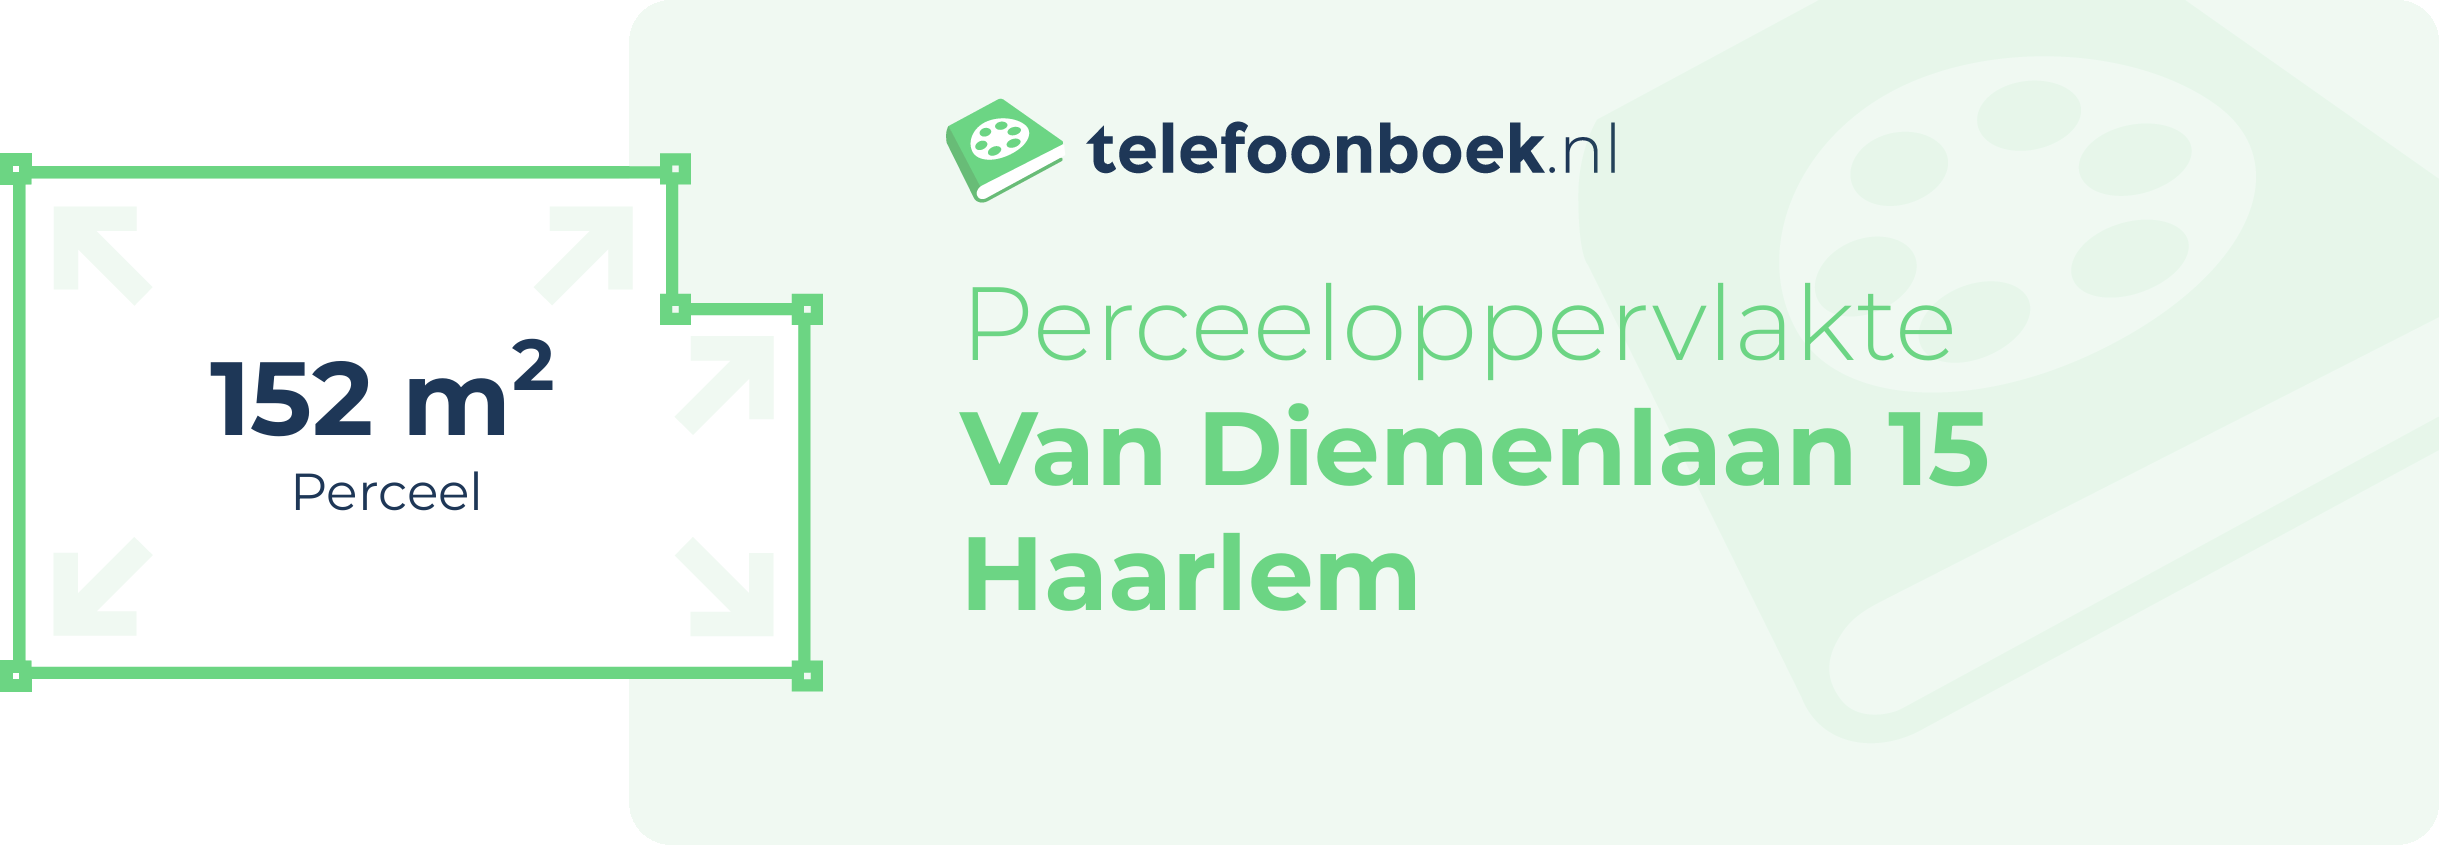 Perceeloppervlakte Van Diemenlaan 15 Haarlem